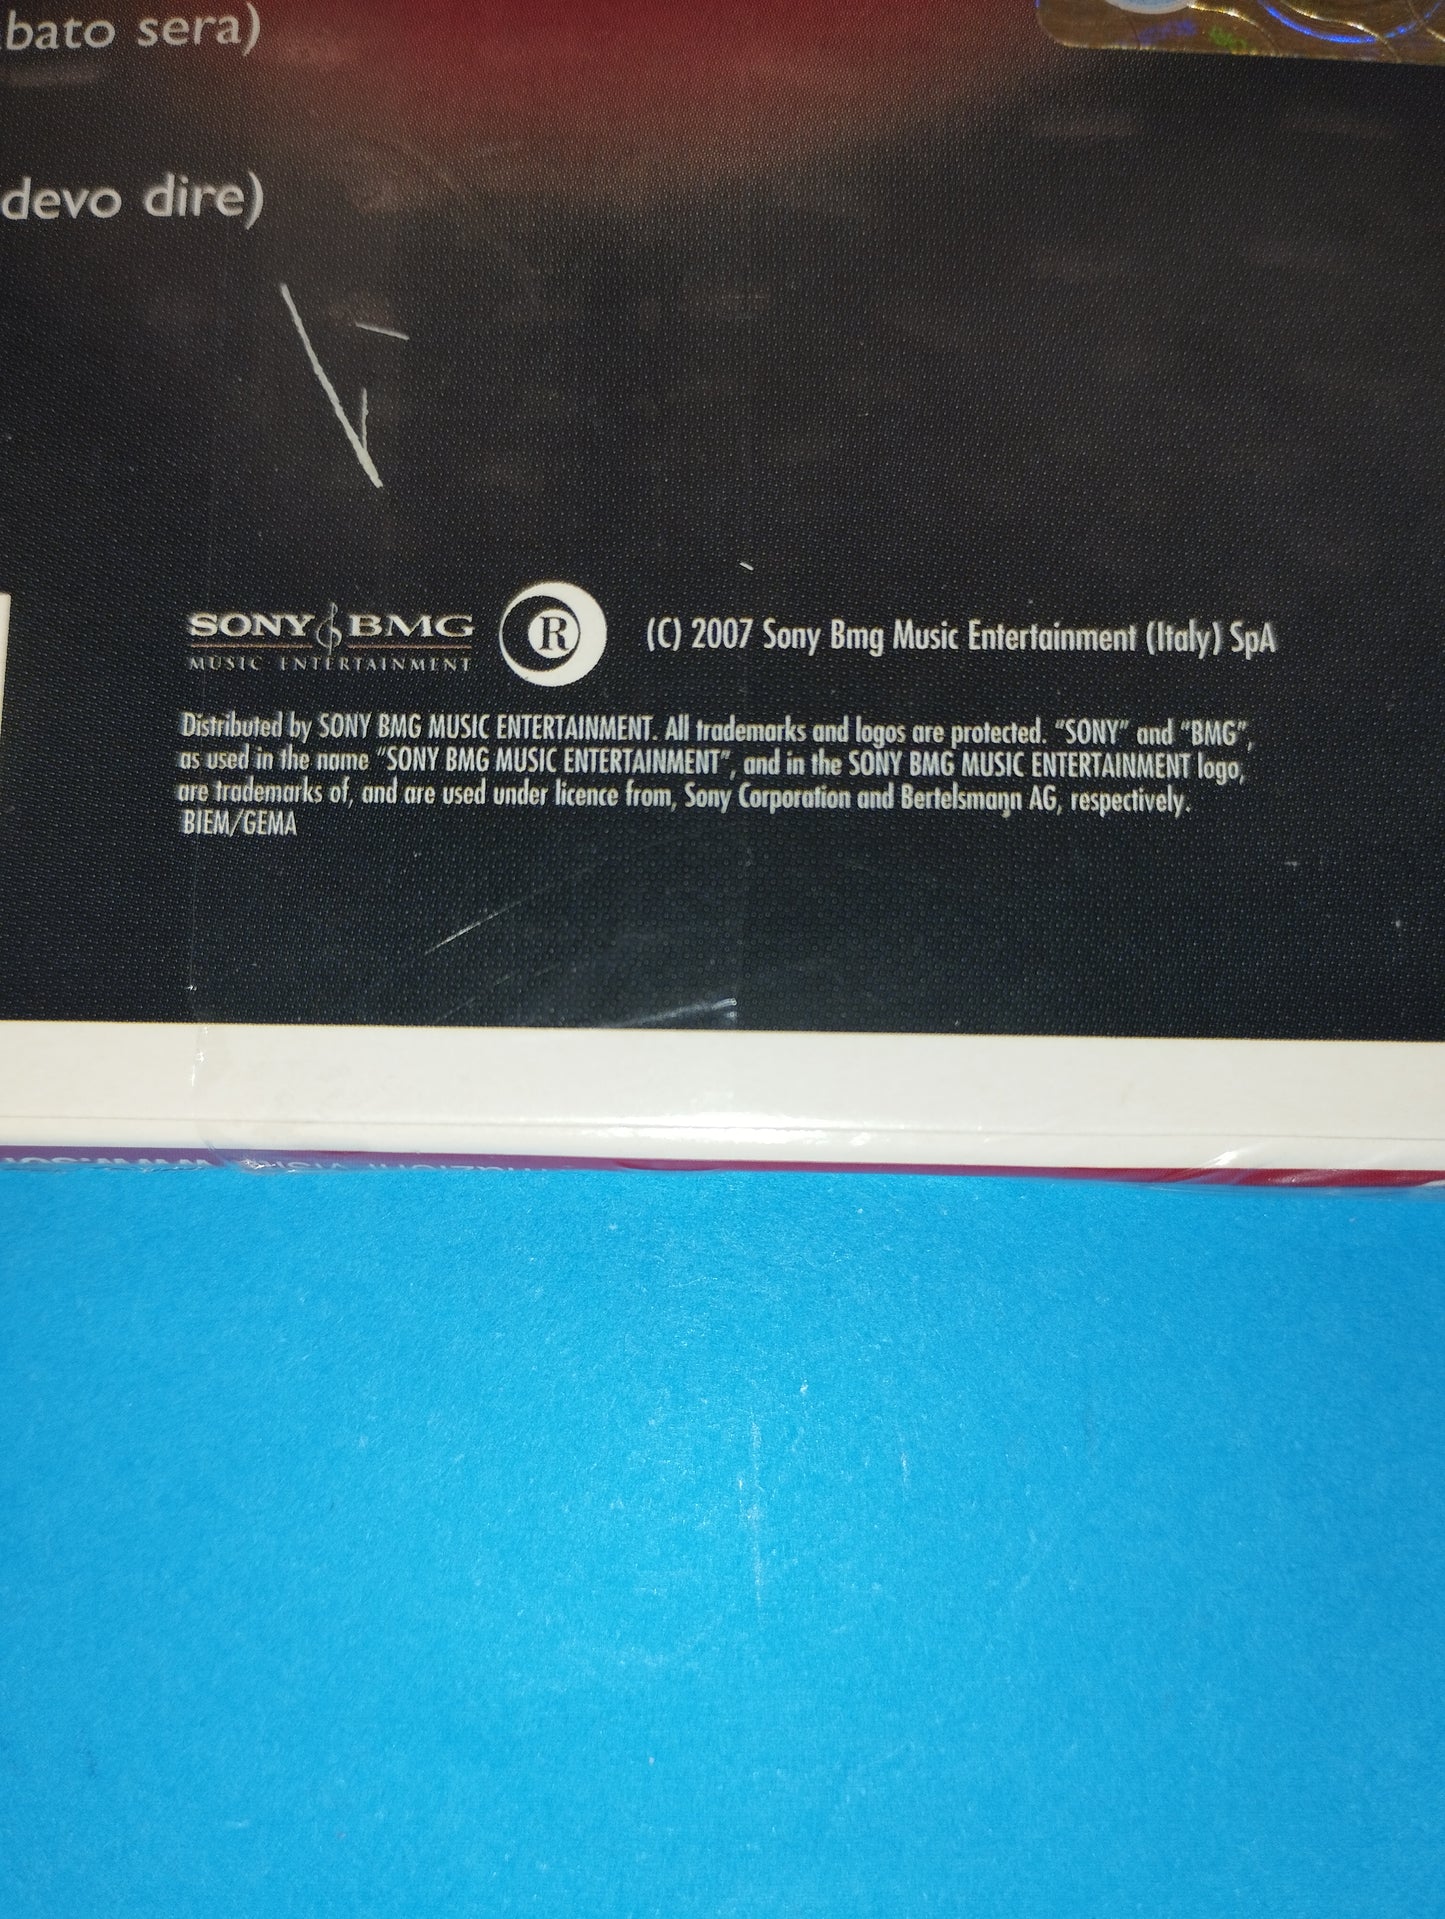 Vasco Rossi Gli Anni 80" CD
Edito nel 2007 da Sony BMG